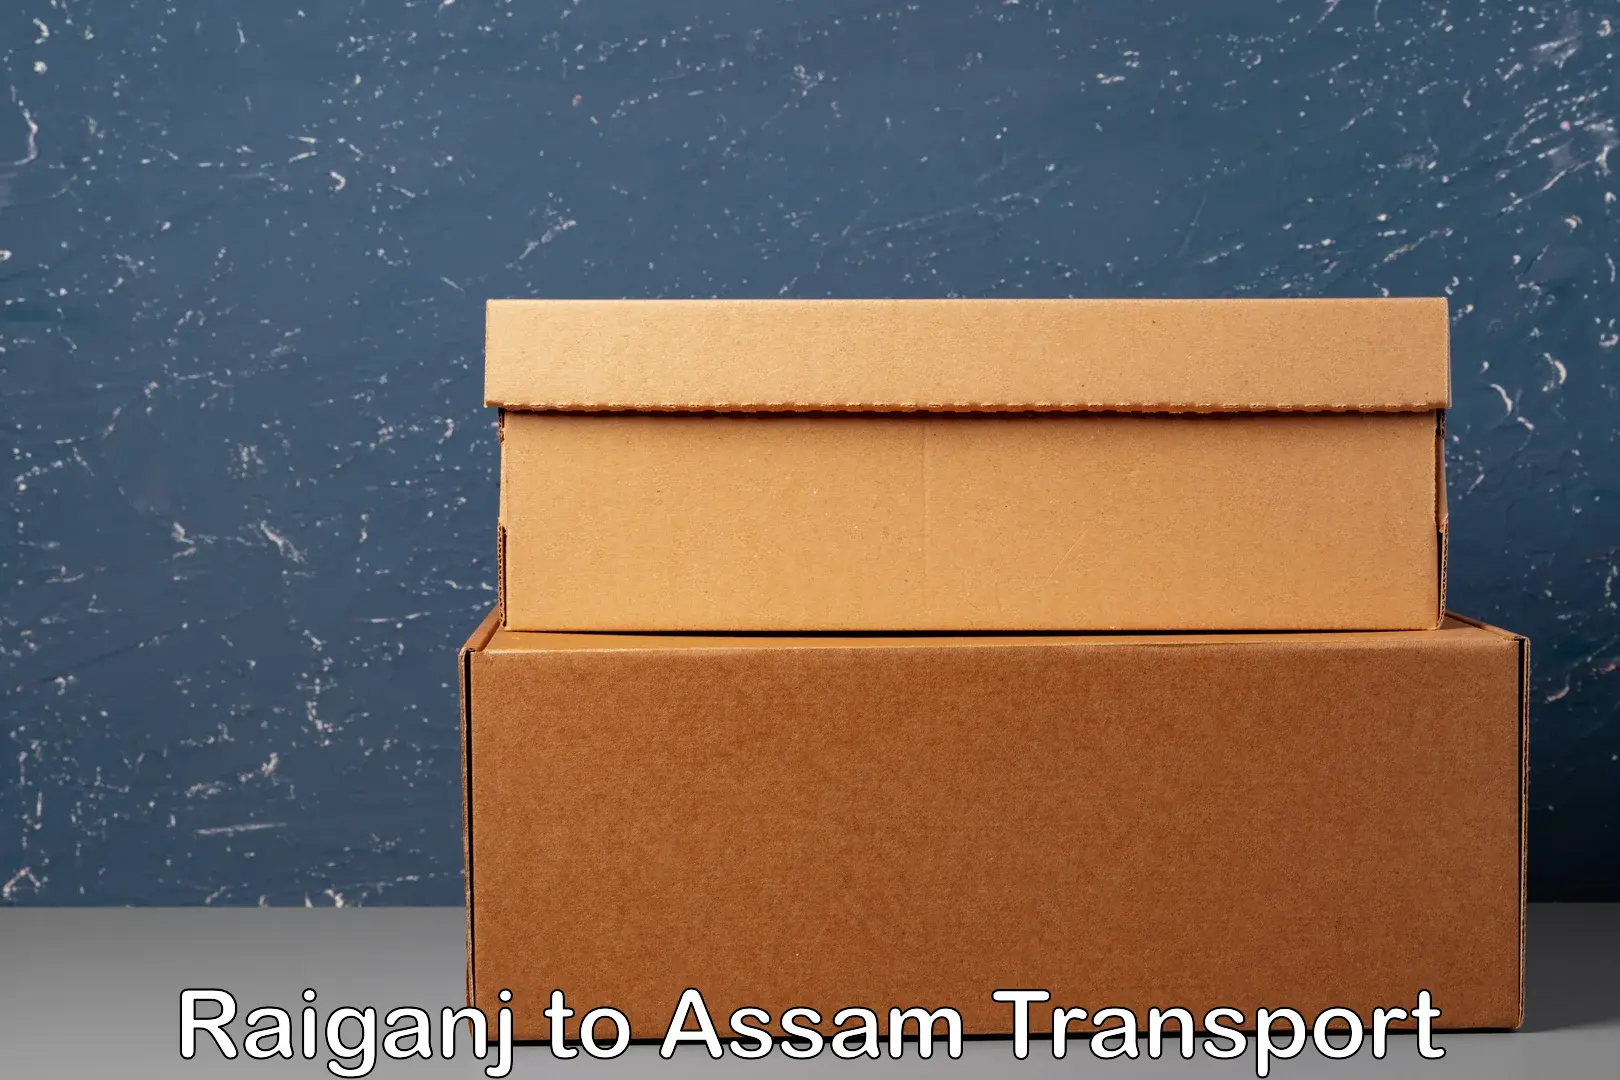 Door to door transport services Raiganj to Assam